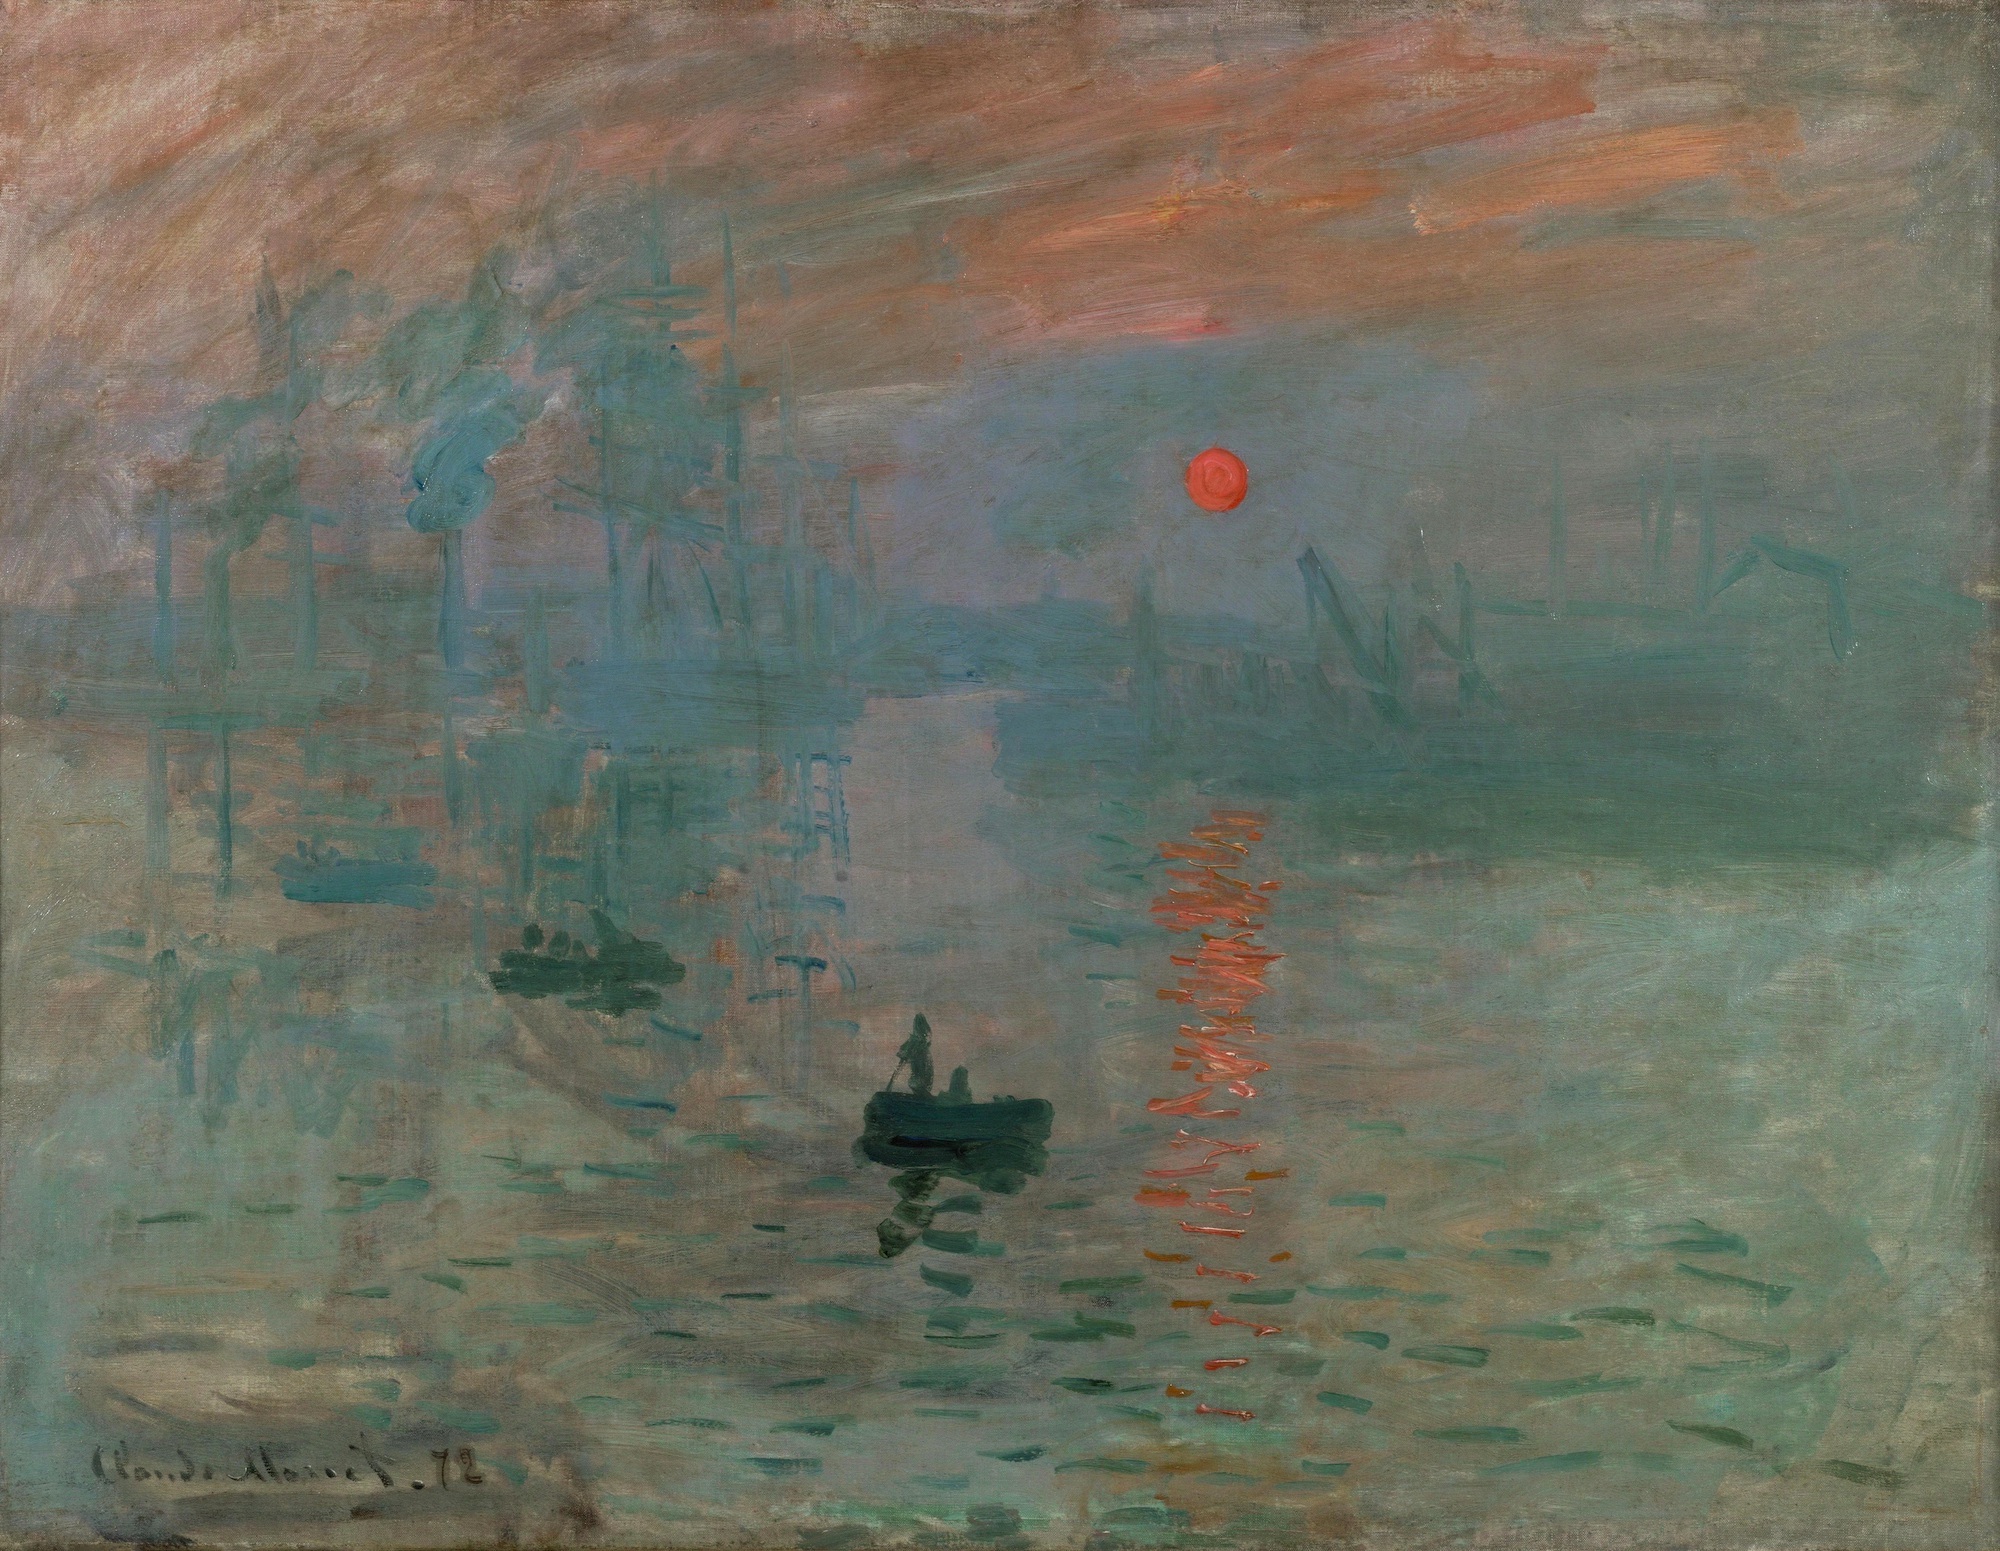 Impression, Sunrise by Claude Monet - 1872 - 48 × 63 cm Musée Marmottan Monet